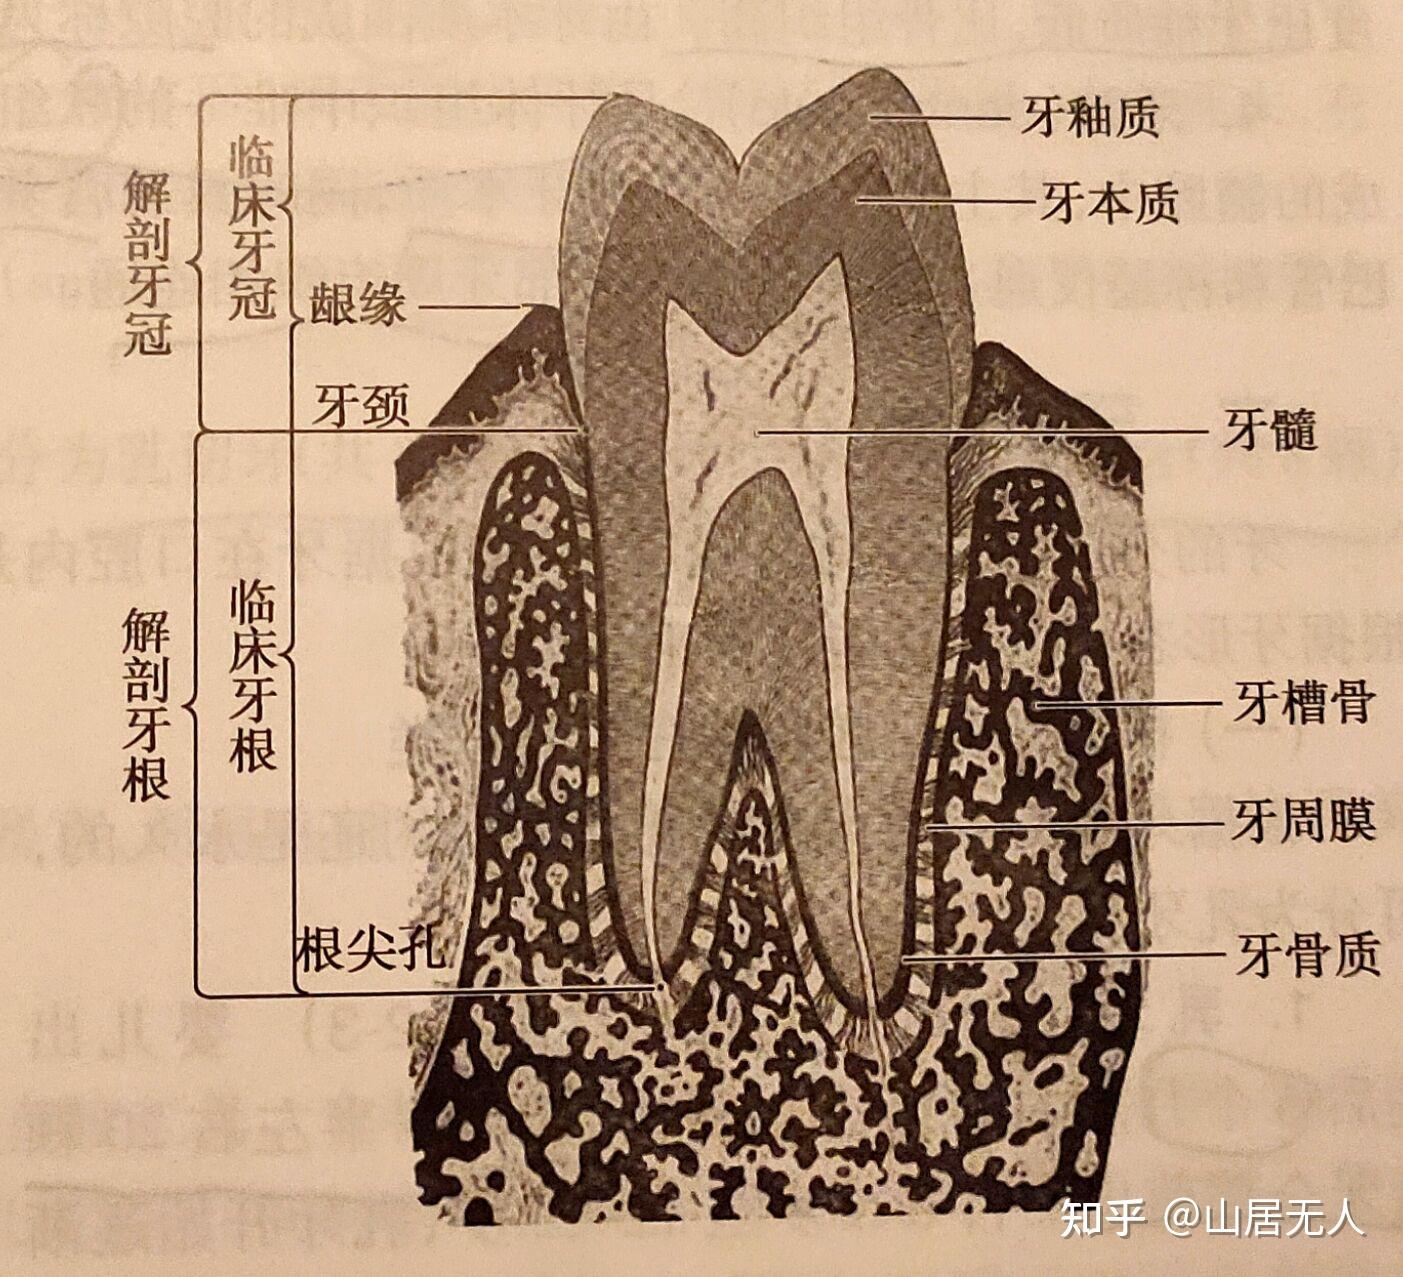 牙床解剖图图片